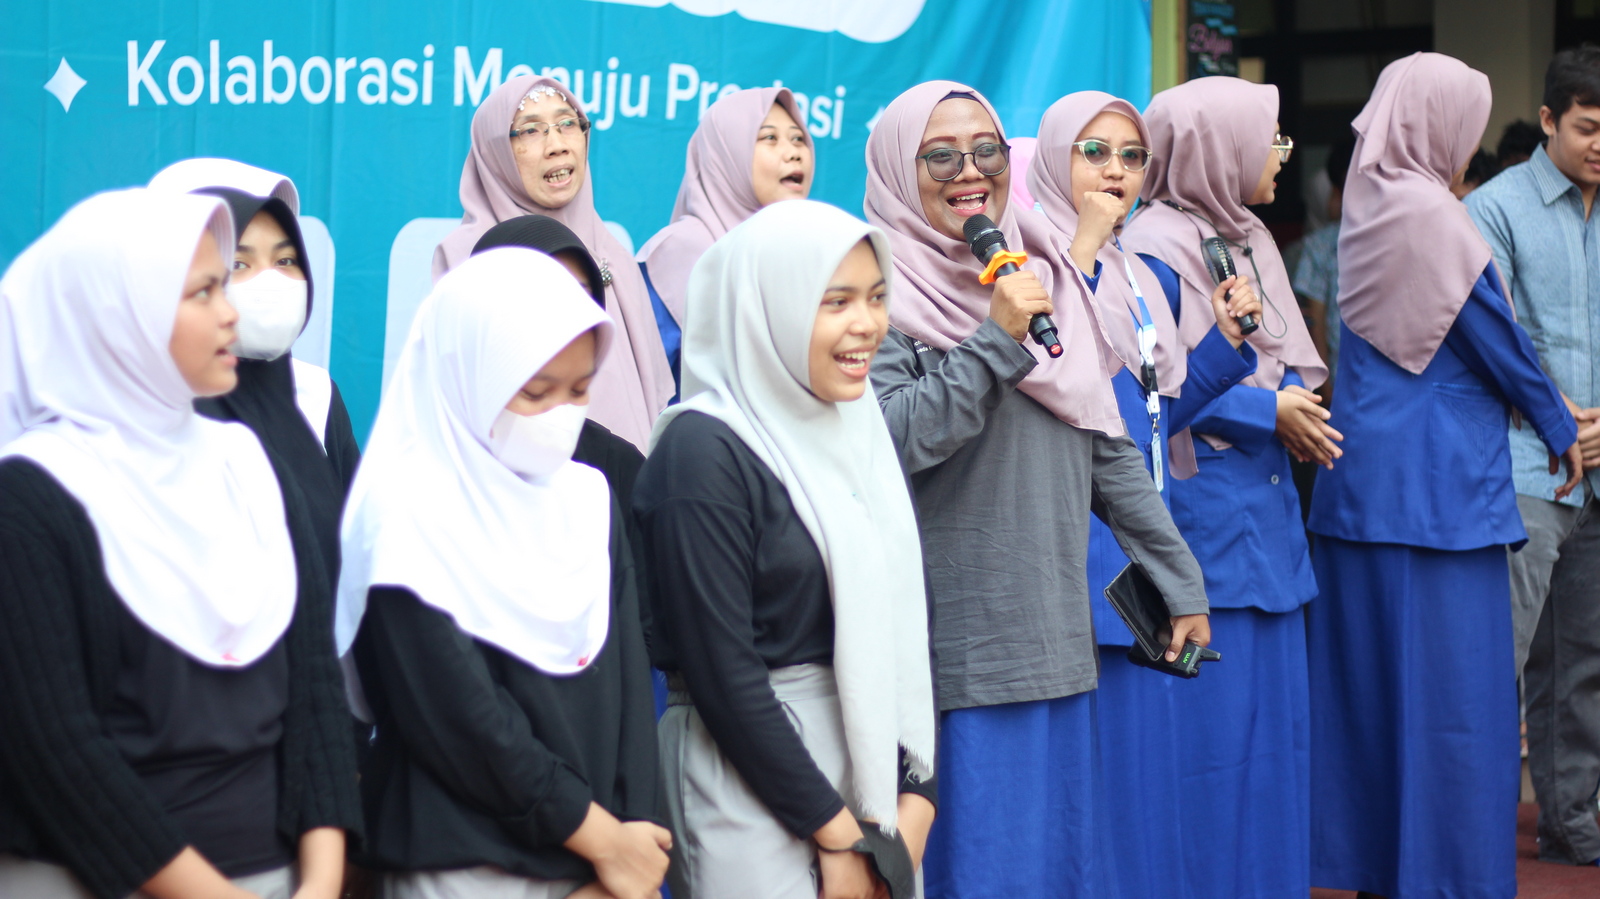 SMA Al Muslim Expo 2023